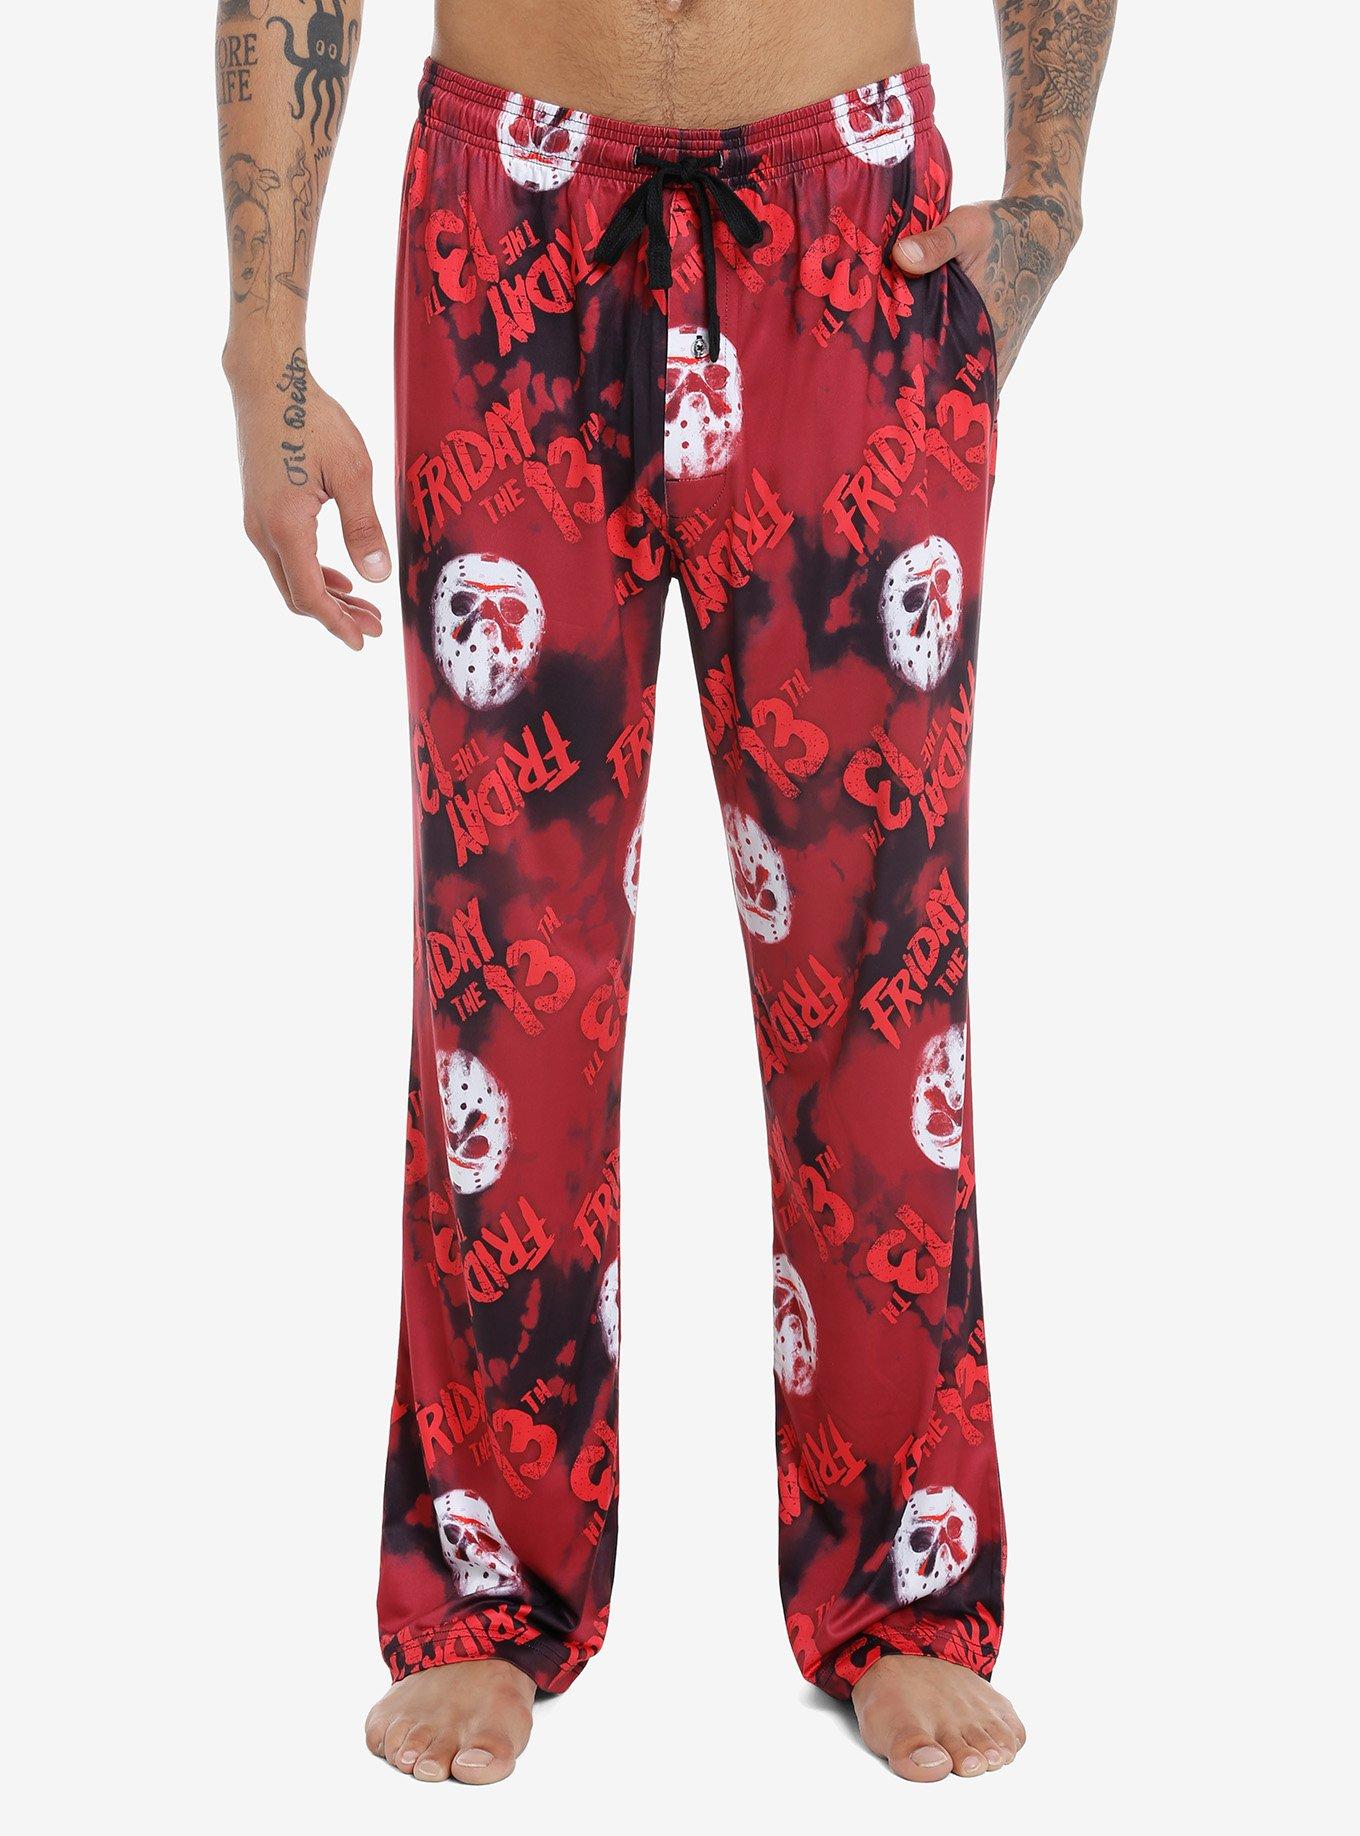 Friday The 13th Logo Pajama Pants | Hot Topic